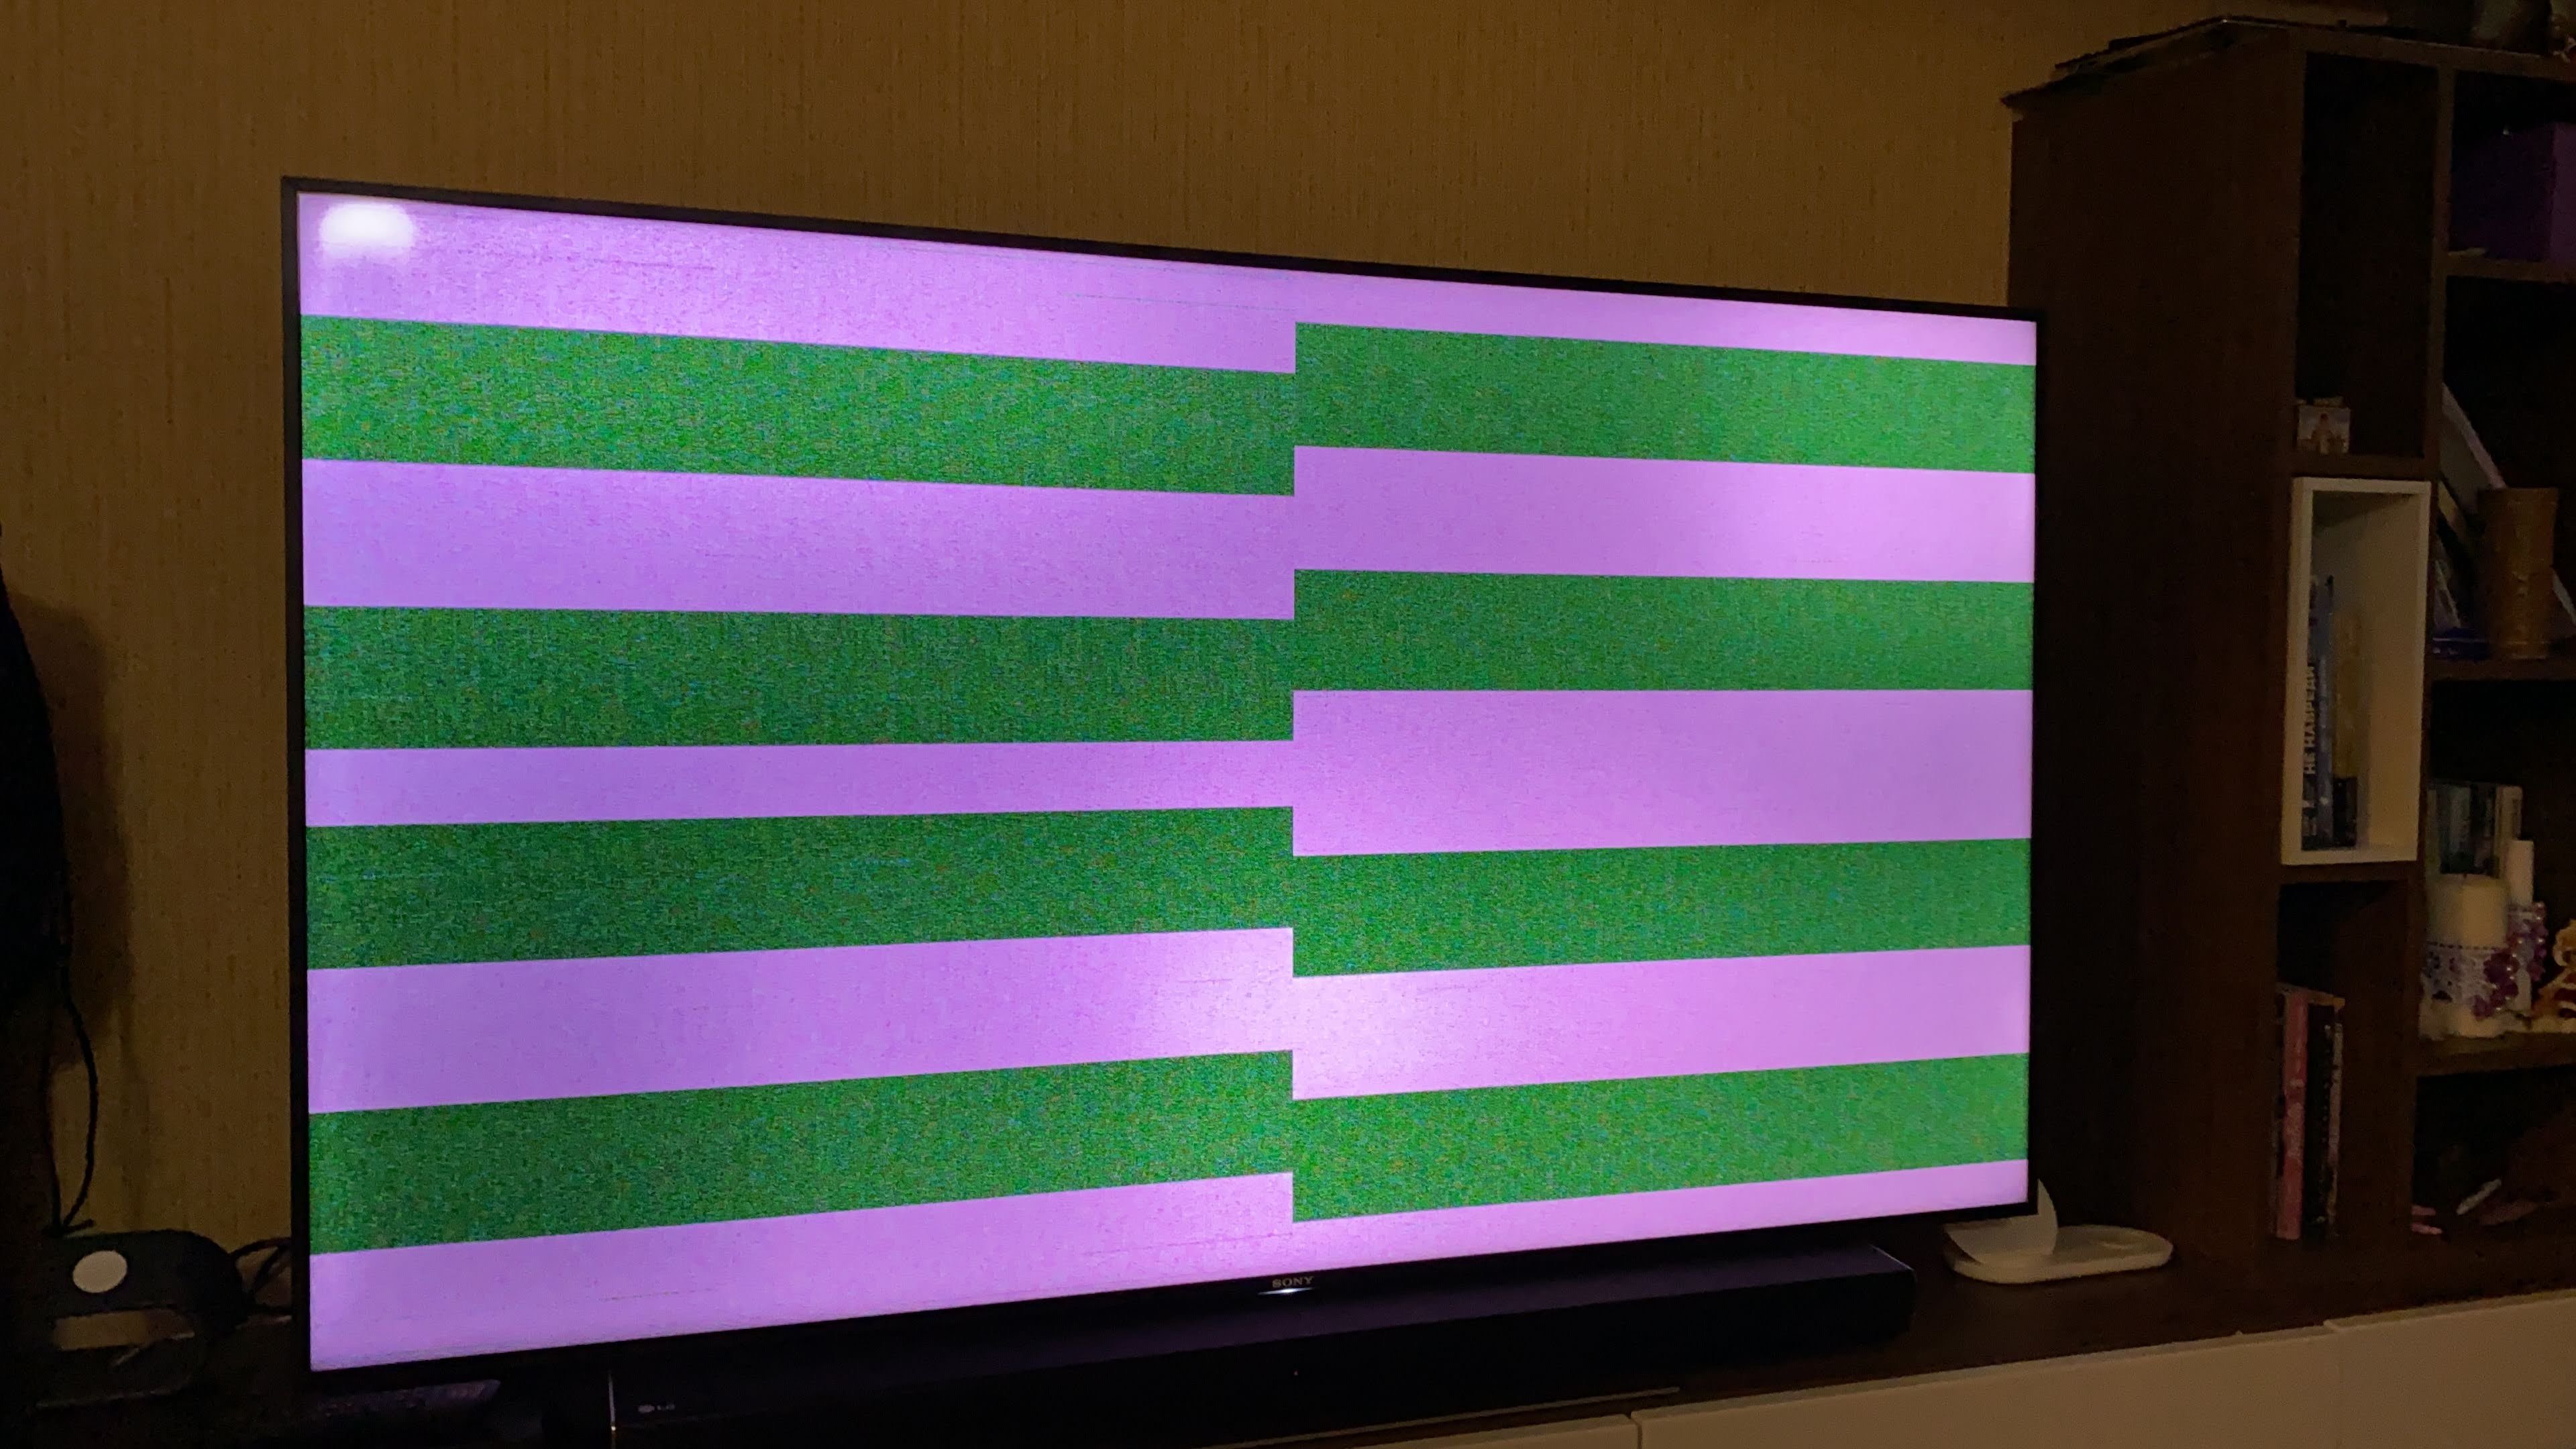 Появились полоски на экране телевизора. KD-65x9005a полосы на экране. Горизонтальные полоски на экране. Горизонтальные полосы на телевизоре. Полоски на телевизоре.